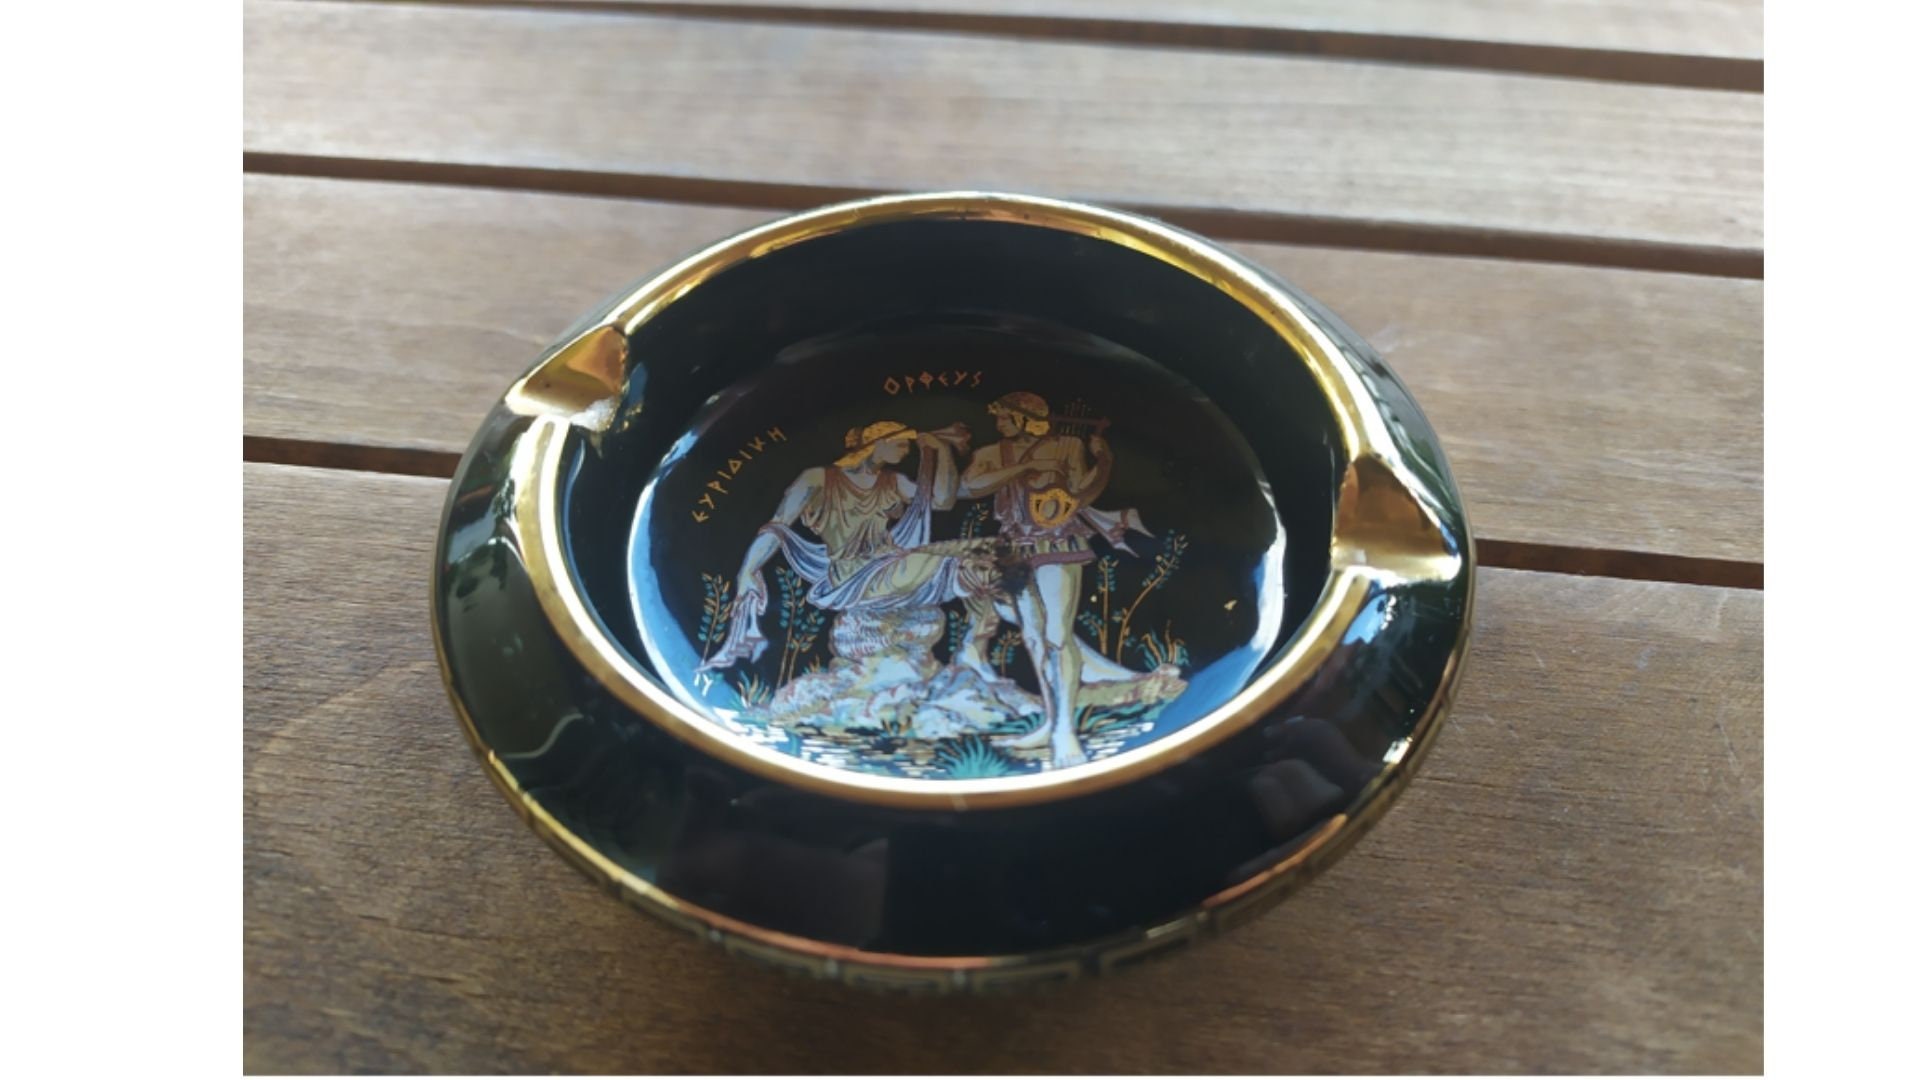 Griechischer Aschenbecher Keramik Vintage 90er Jahre Sammlerstück für  Zigaretten Griechische Mythologie getrimmt in 24k Gold Made in Greece -  .de